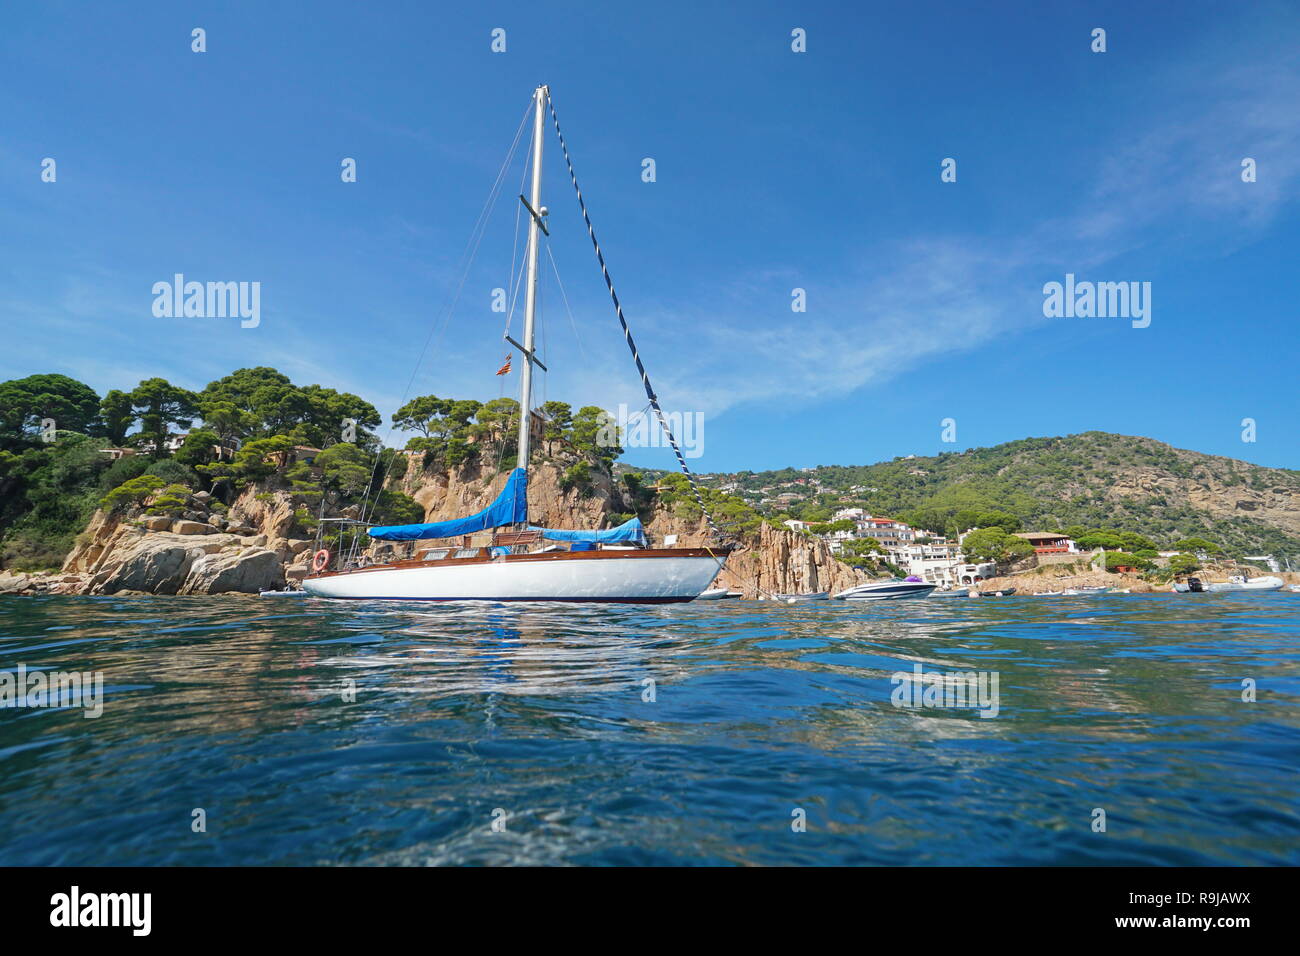 Espagne Un voilier amarré près de la côte rocheuse à Fornells de Mar village, Begur, Costa Brava, Catalogne, mer Méditerranée Banque D'Images